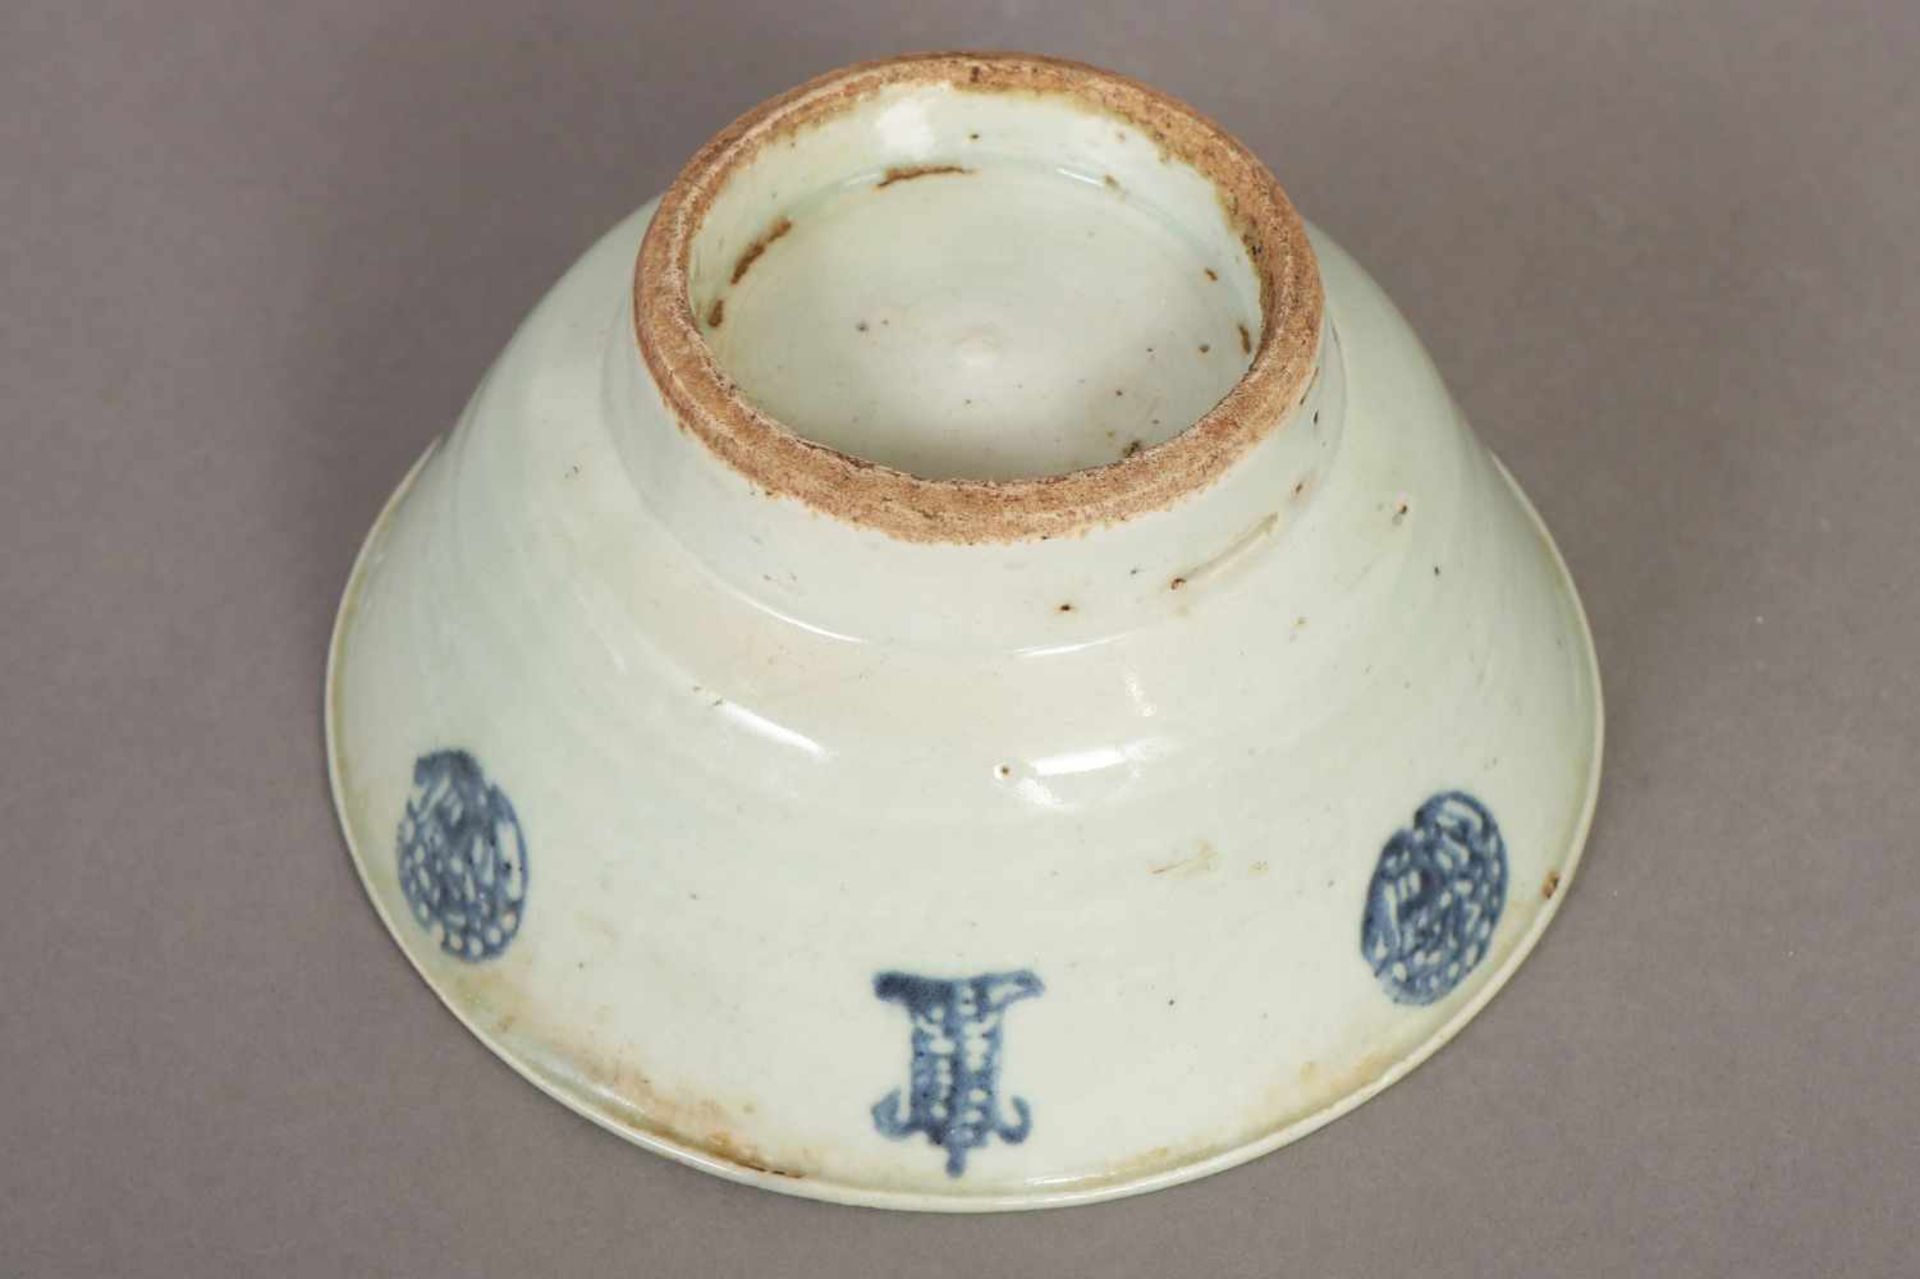 Schale im Stile Ming China, 17./18. Jhdt., Porzellan, leicht seladonfarben glasiert, ausgestellte - Bild 2 aus 2